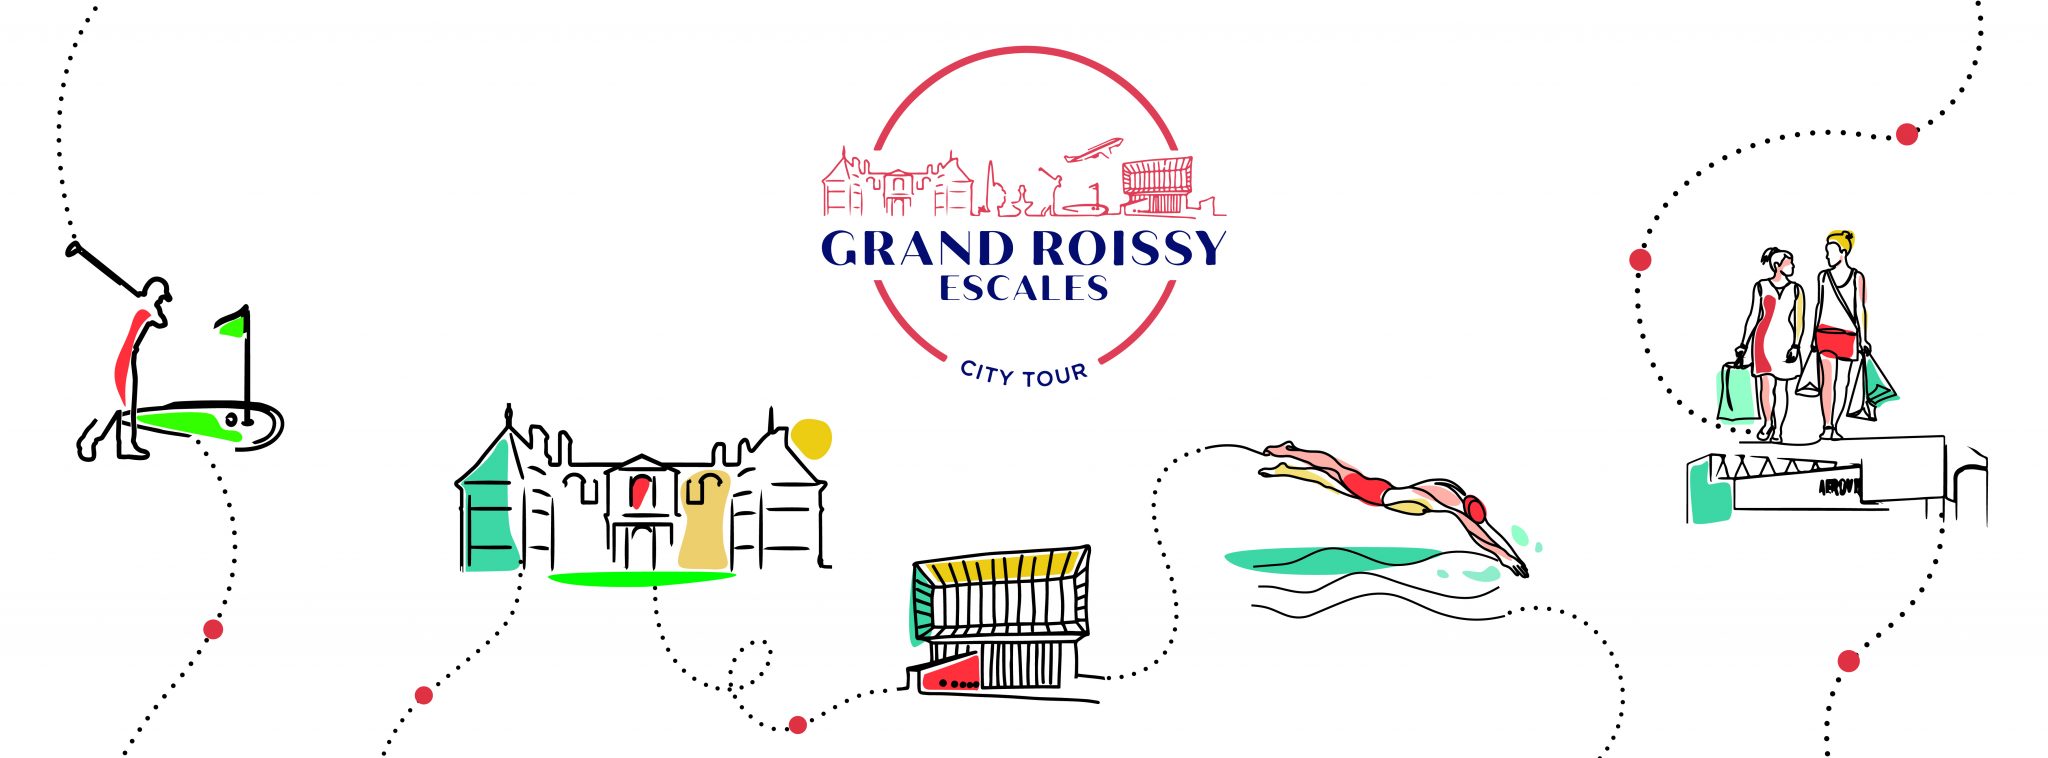 O Posto de Turismo de Grand Roissy lança seu City Tour